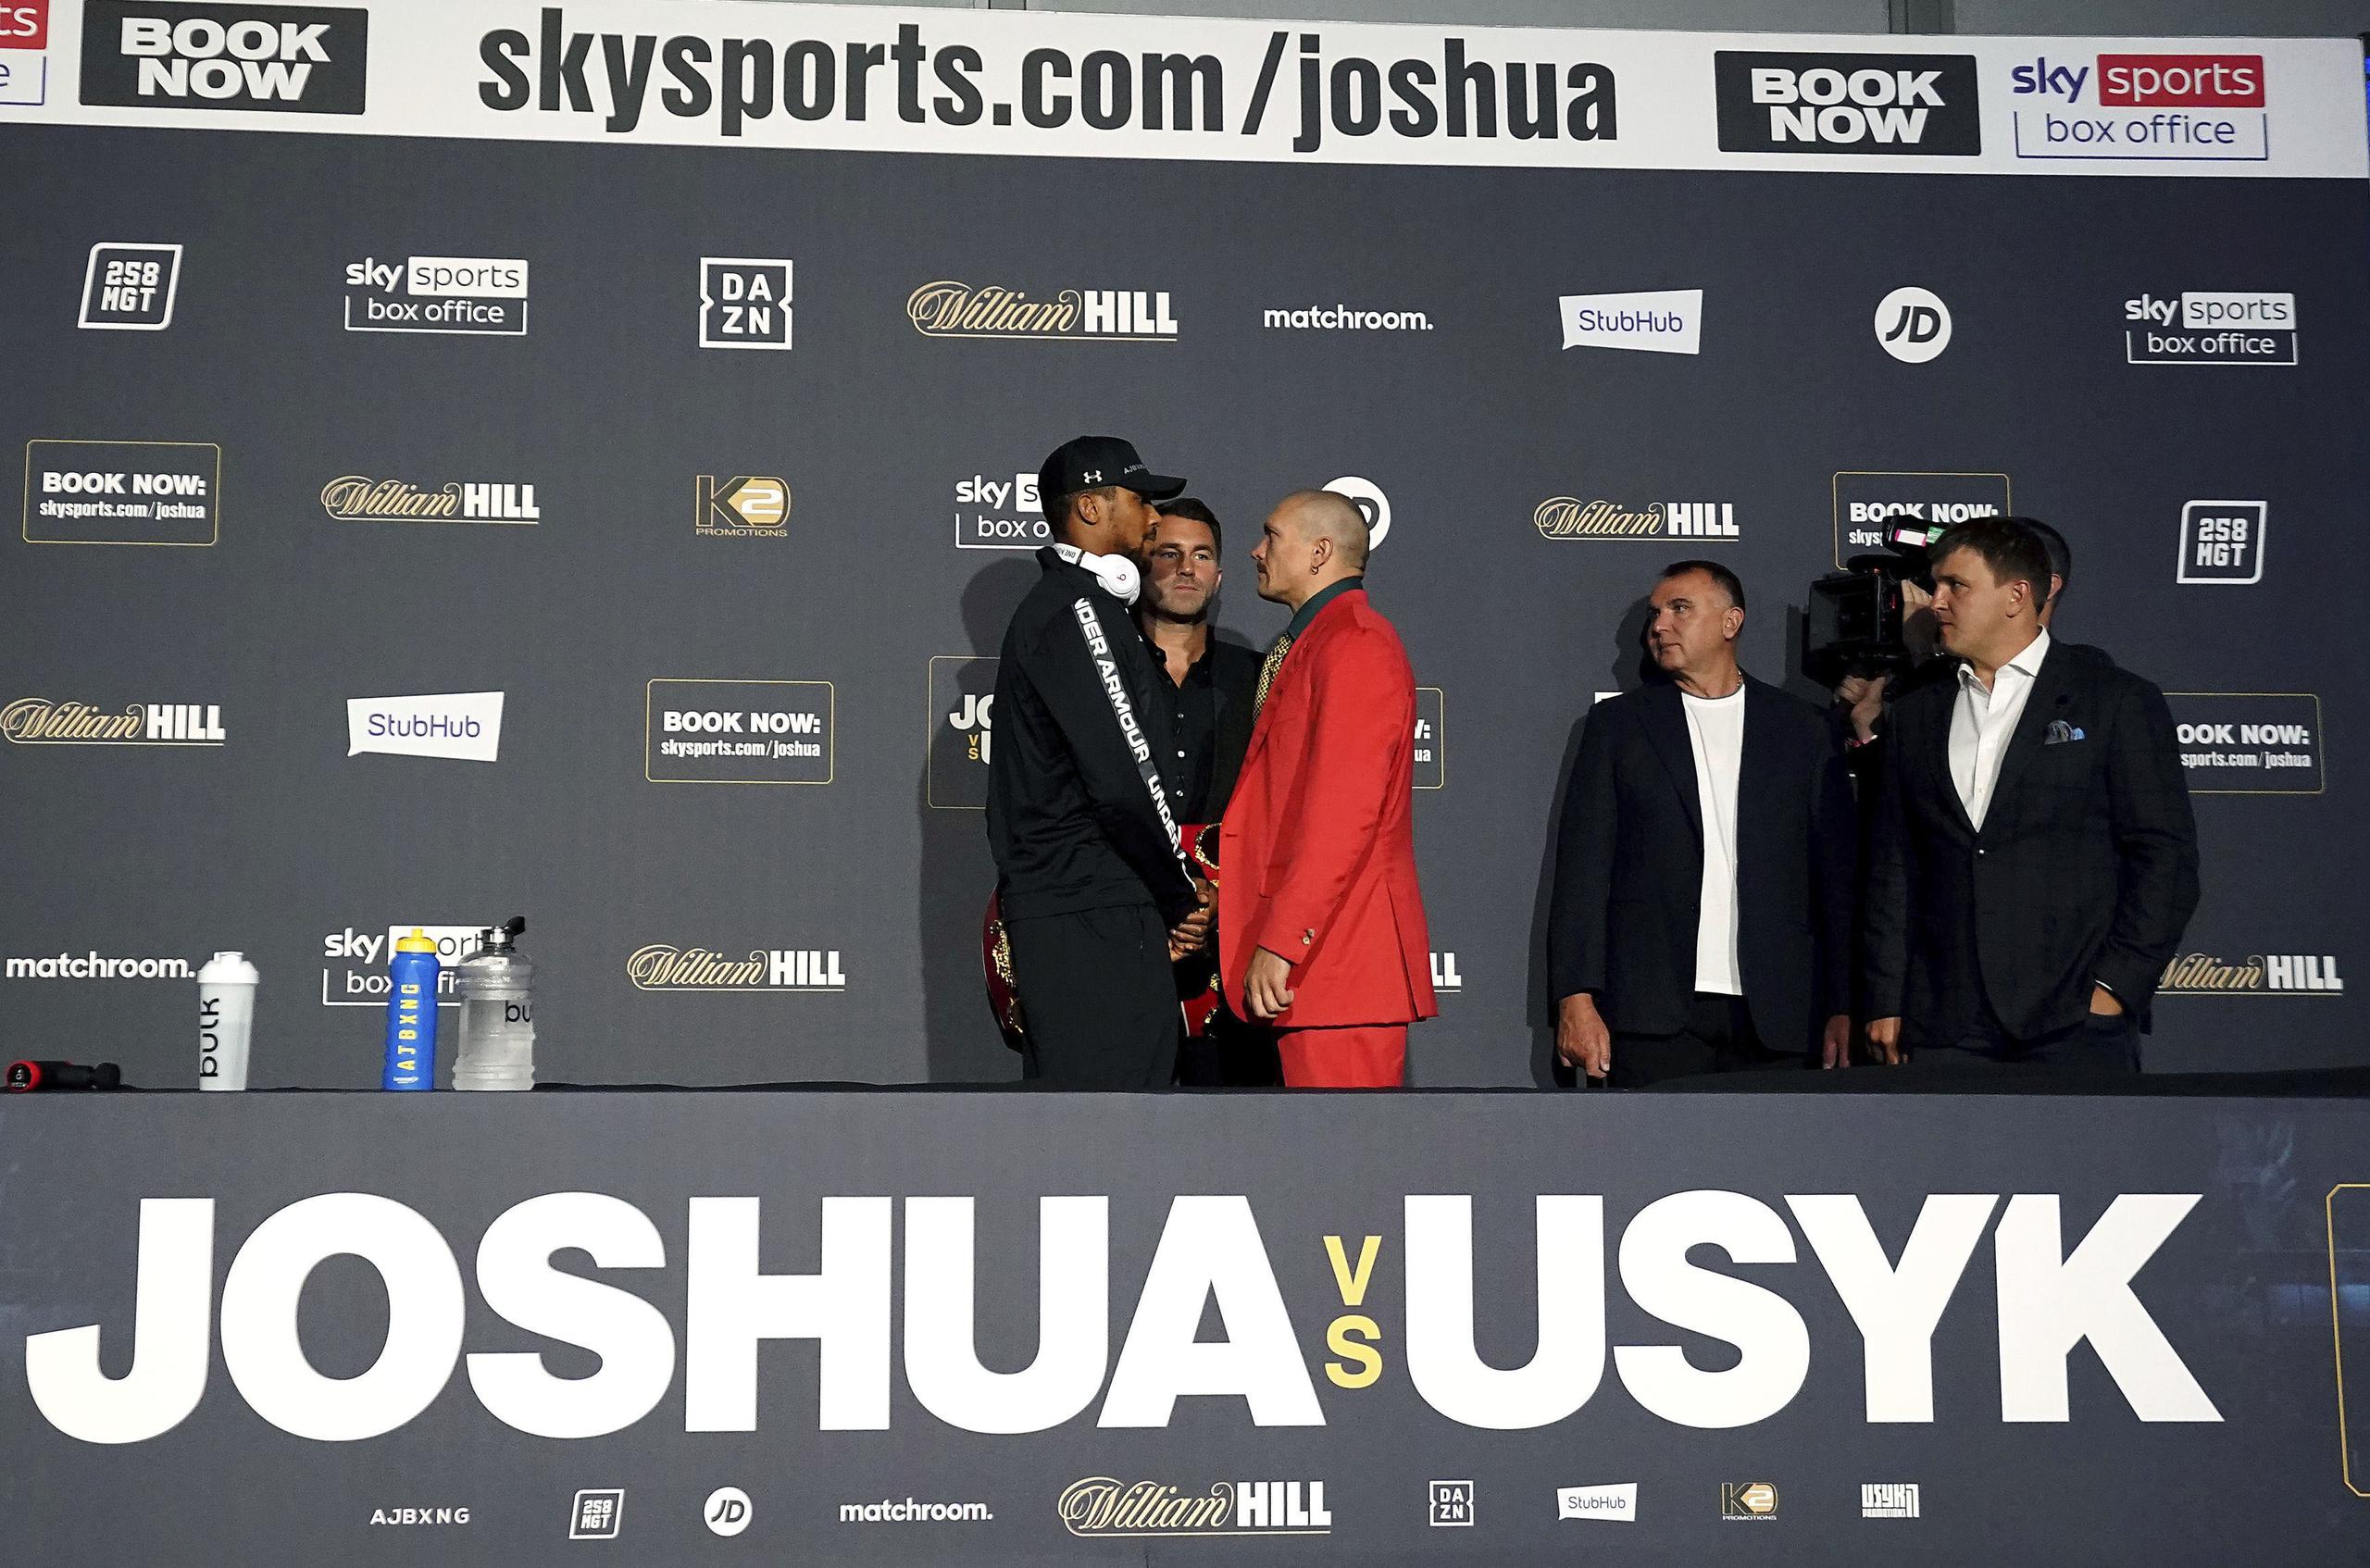 El boxeador británico Anthony Joshua, izquierda, se encara con su rival ucraniano Oleksandr Usyk, centro a la derecha, durante una conferencia de prensa en el estadio Tottenham Hotspur de Londres.